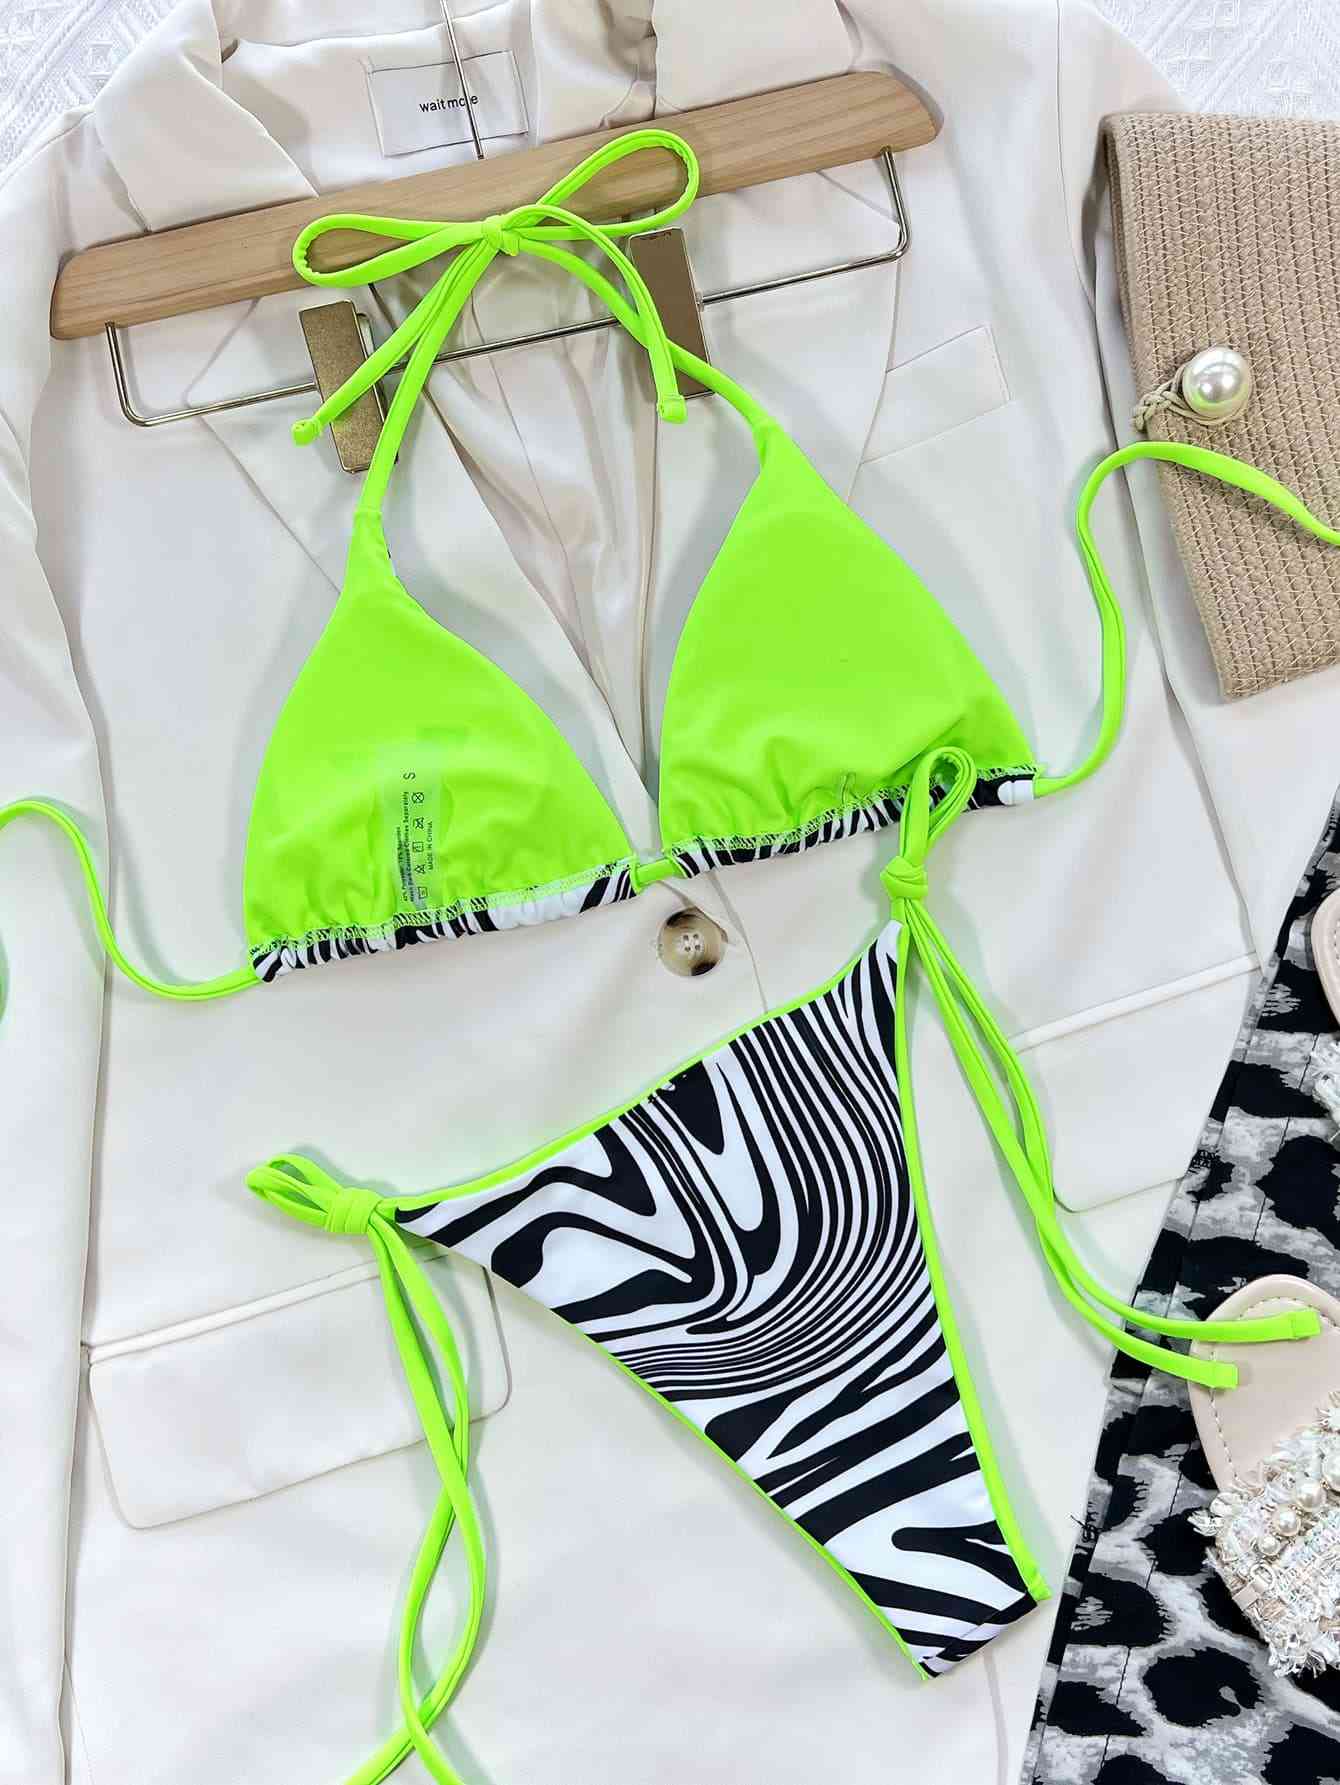 Zebra Print Halter Neck Bikini in Size S, M, or L